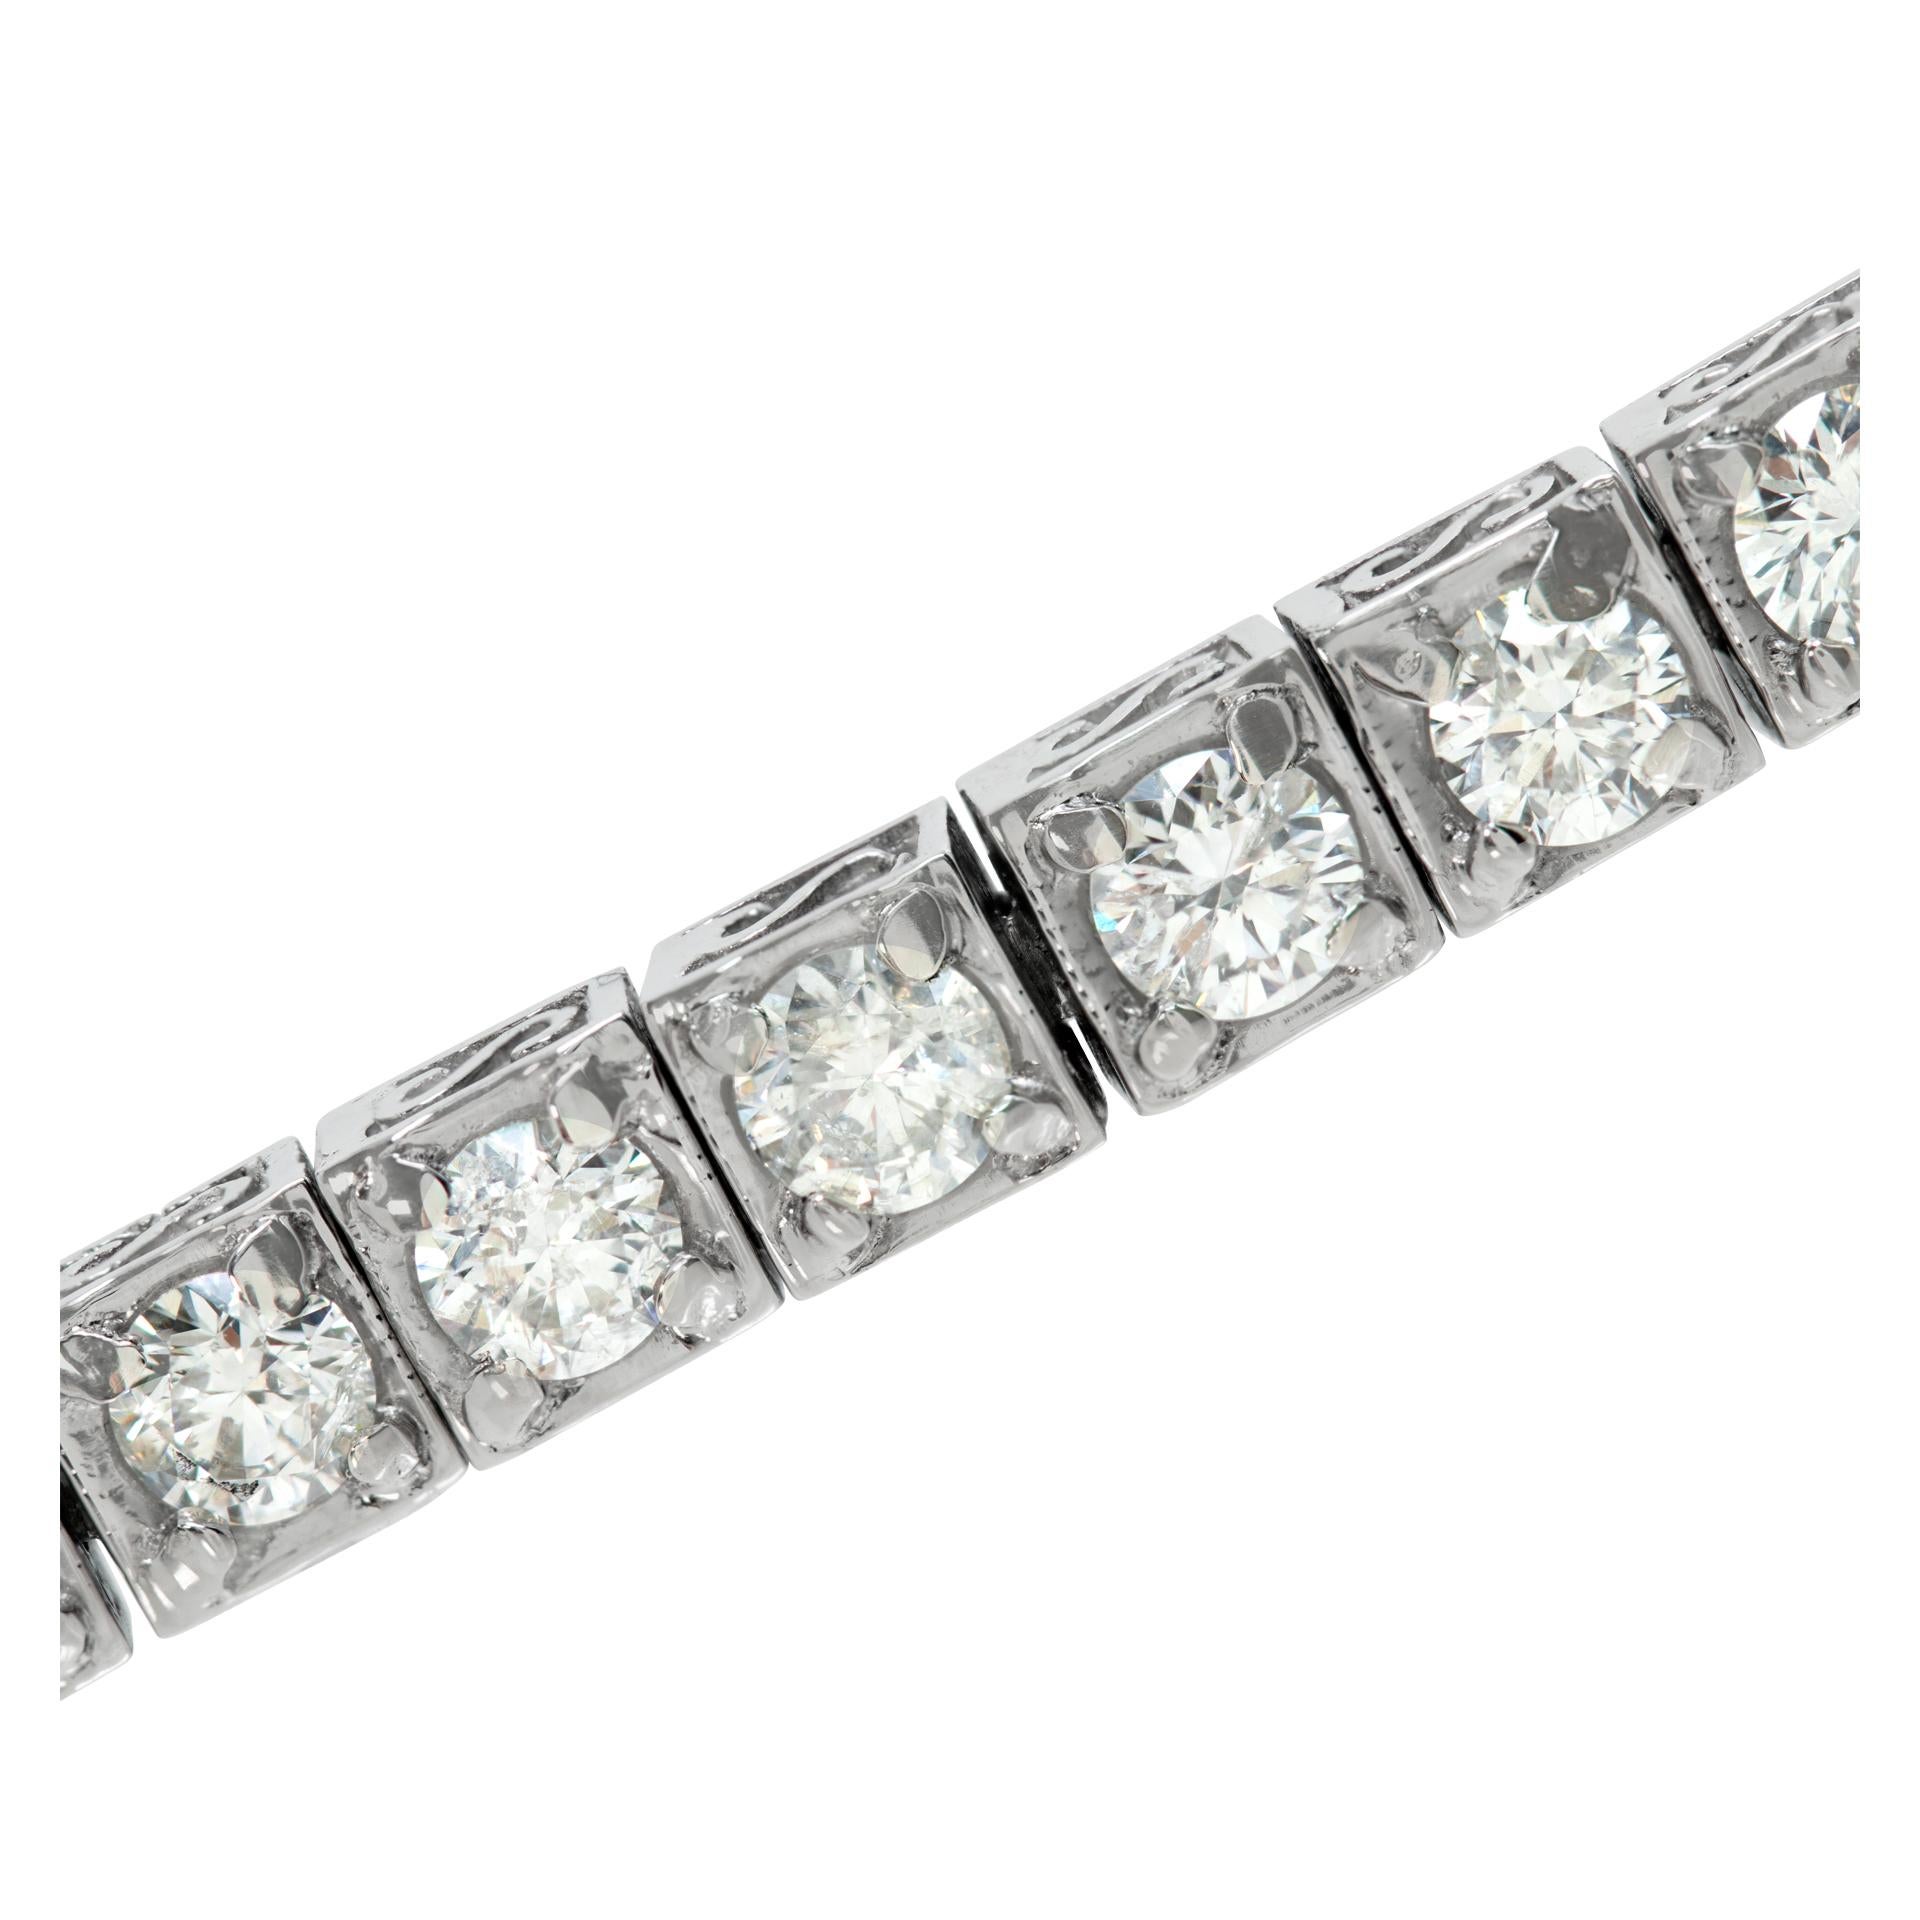 Bracelet en diamant avec des diamants ronds de taille brillant de 7,05 carats de couleur H-I, de pureté SI-I, sertis dans une monture en platine à 4 branches. Total 35 diamants de 0,20 carat chacun. Longueur 7 pouces. Largeur 5 mm.
